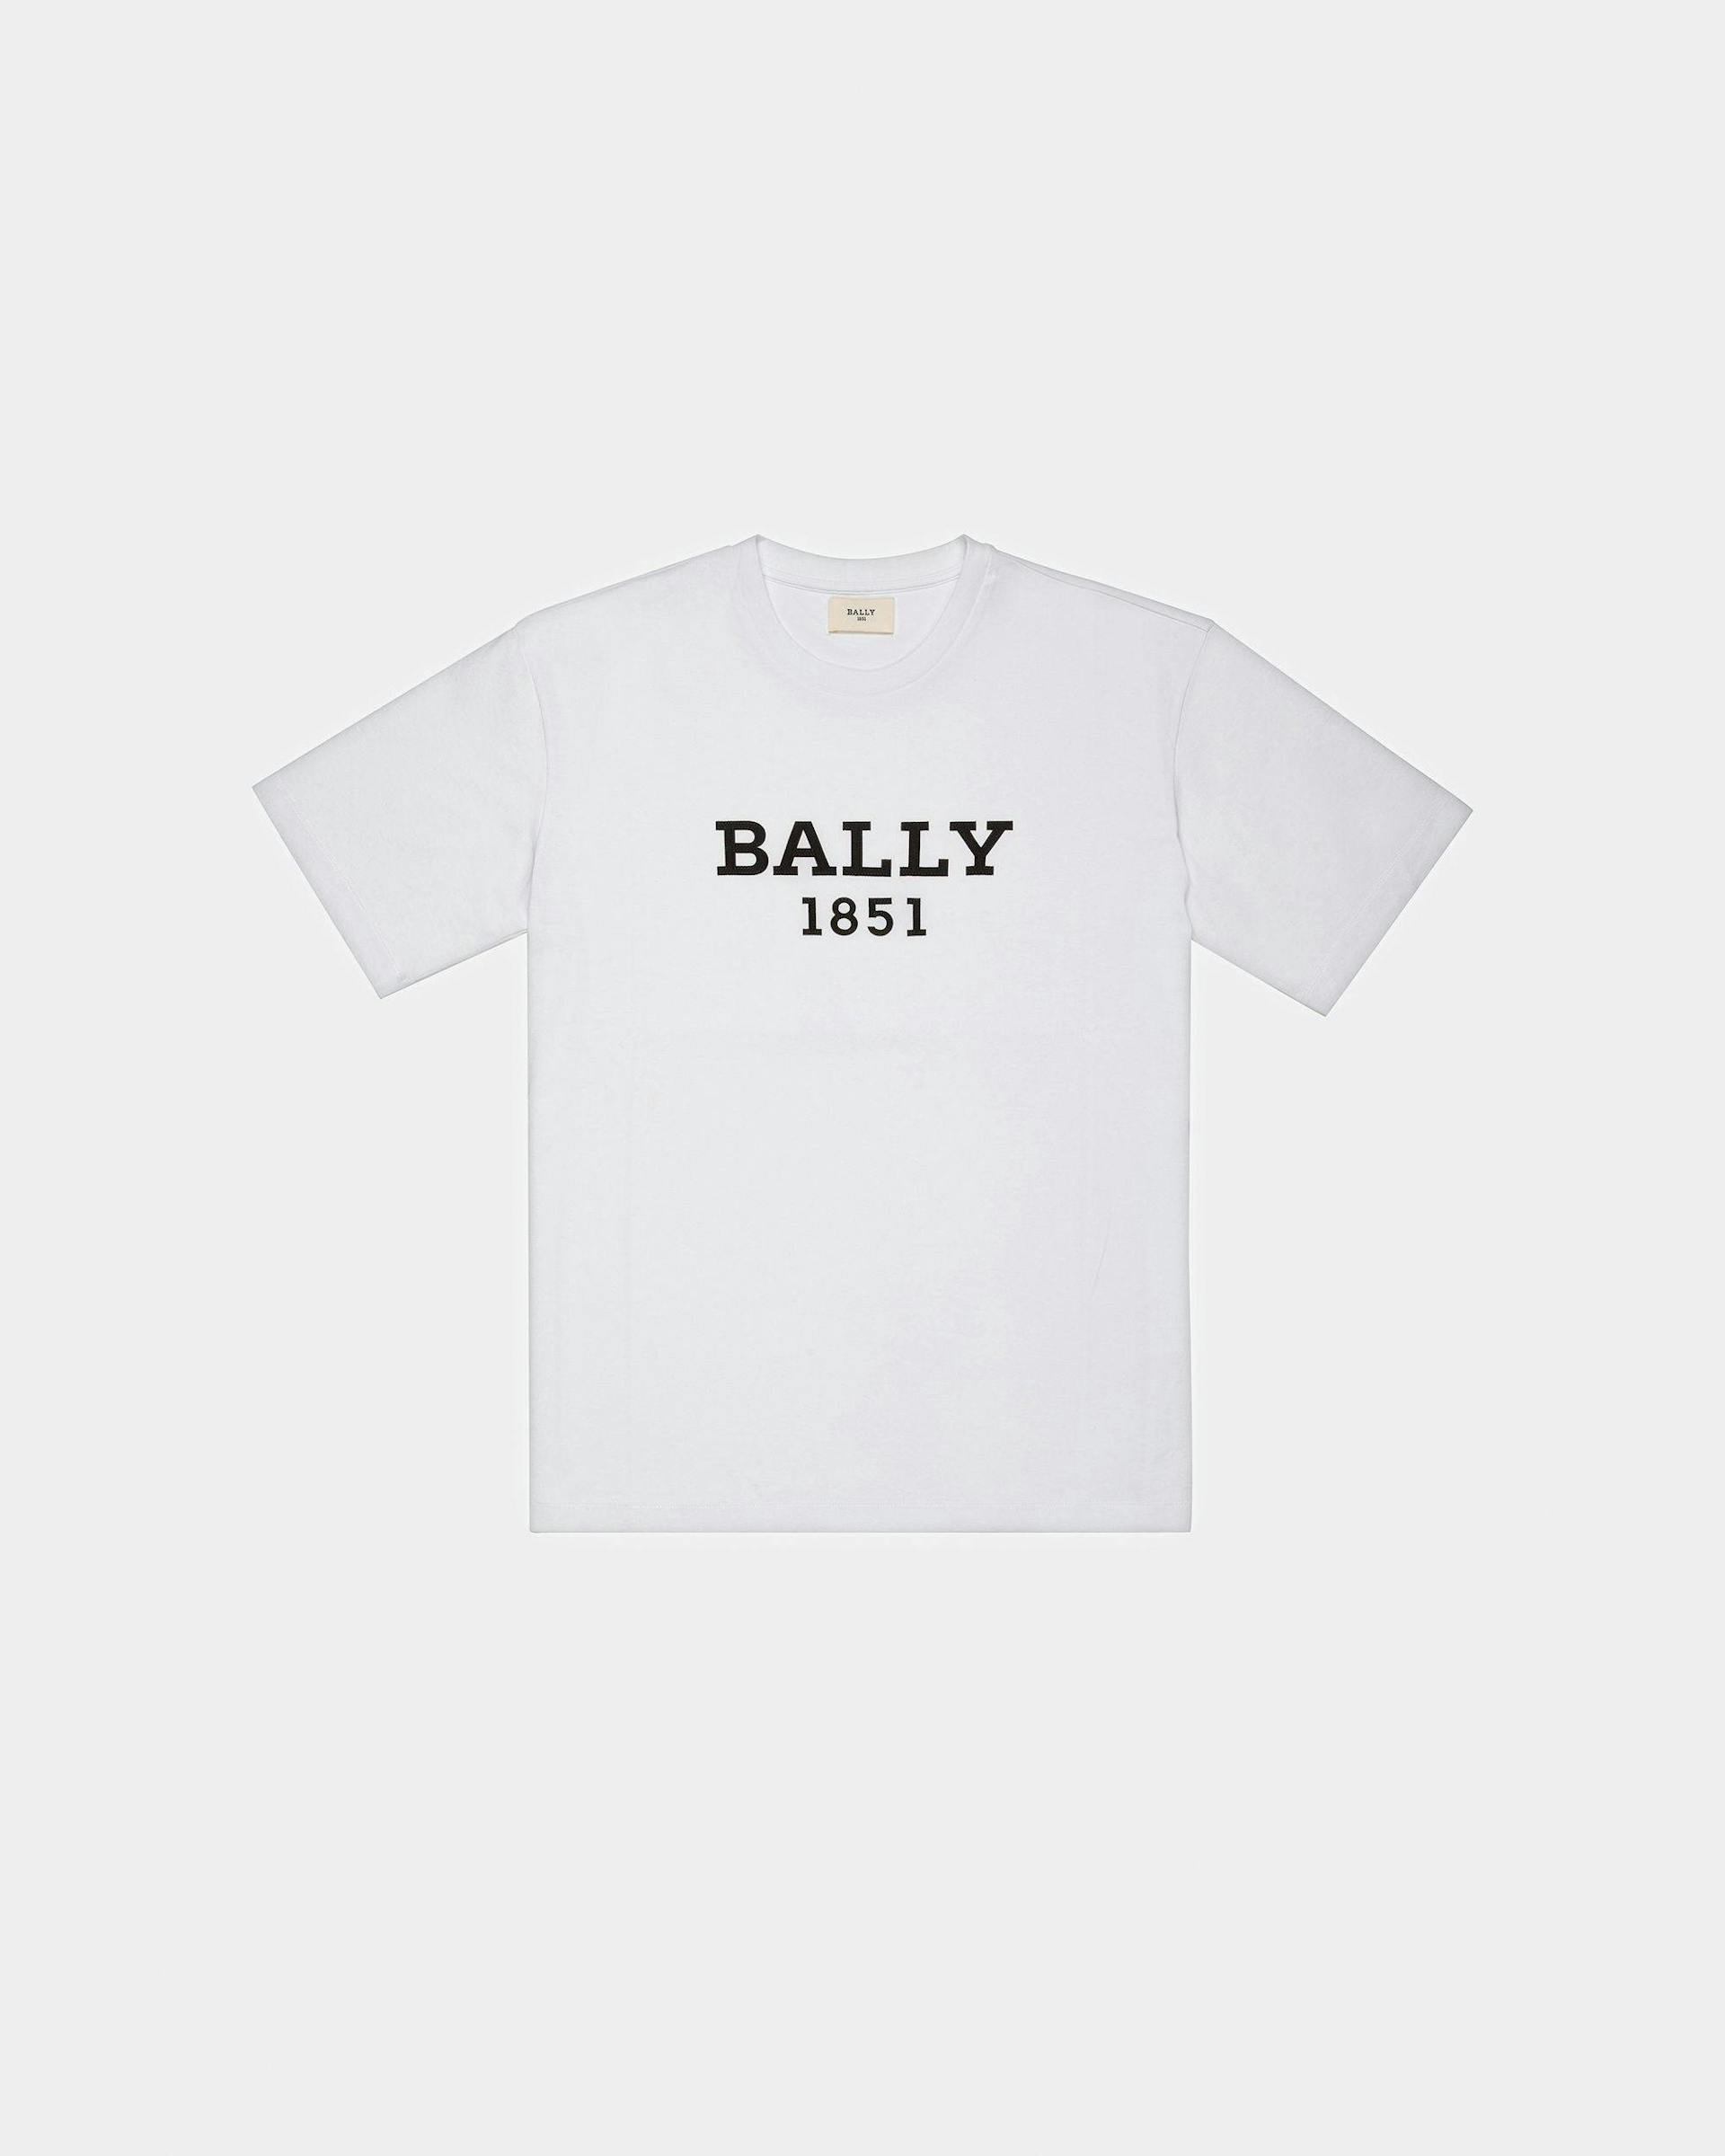 Bally 1851 T-Shirt Aus Bio-Baumwolle In Weiß - Herren - Bally - 01